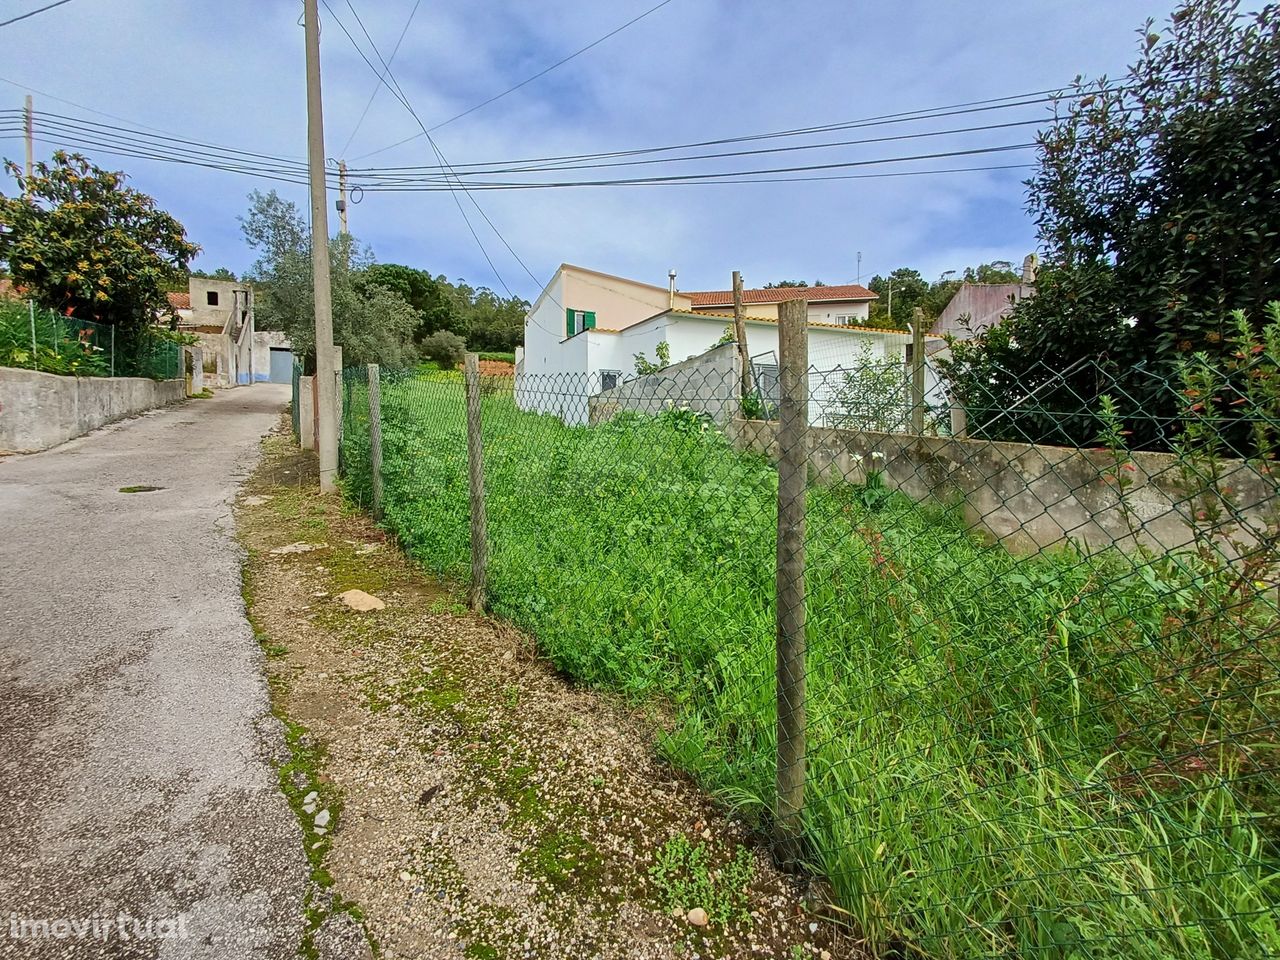 Terreno Urbano 2279m2 em Maiorga, Alcobaça